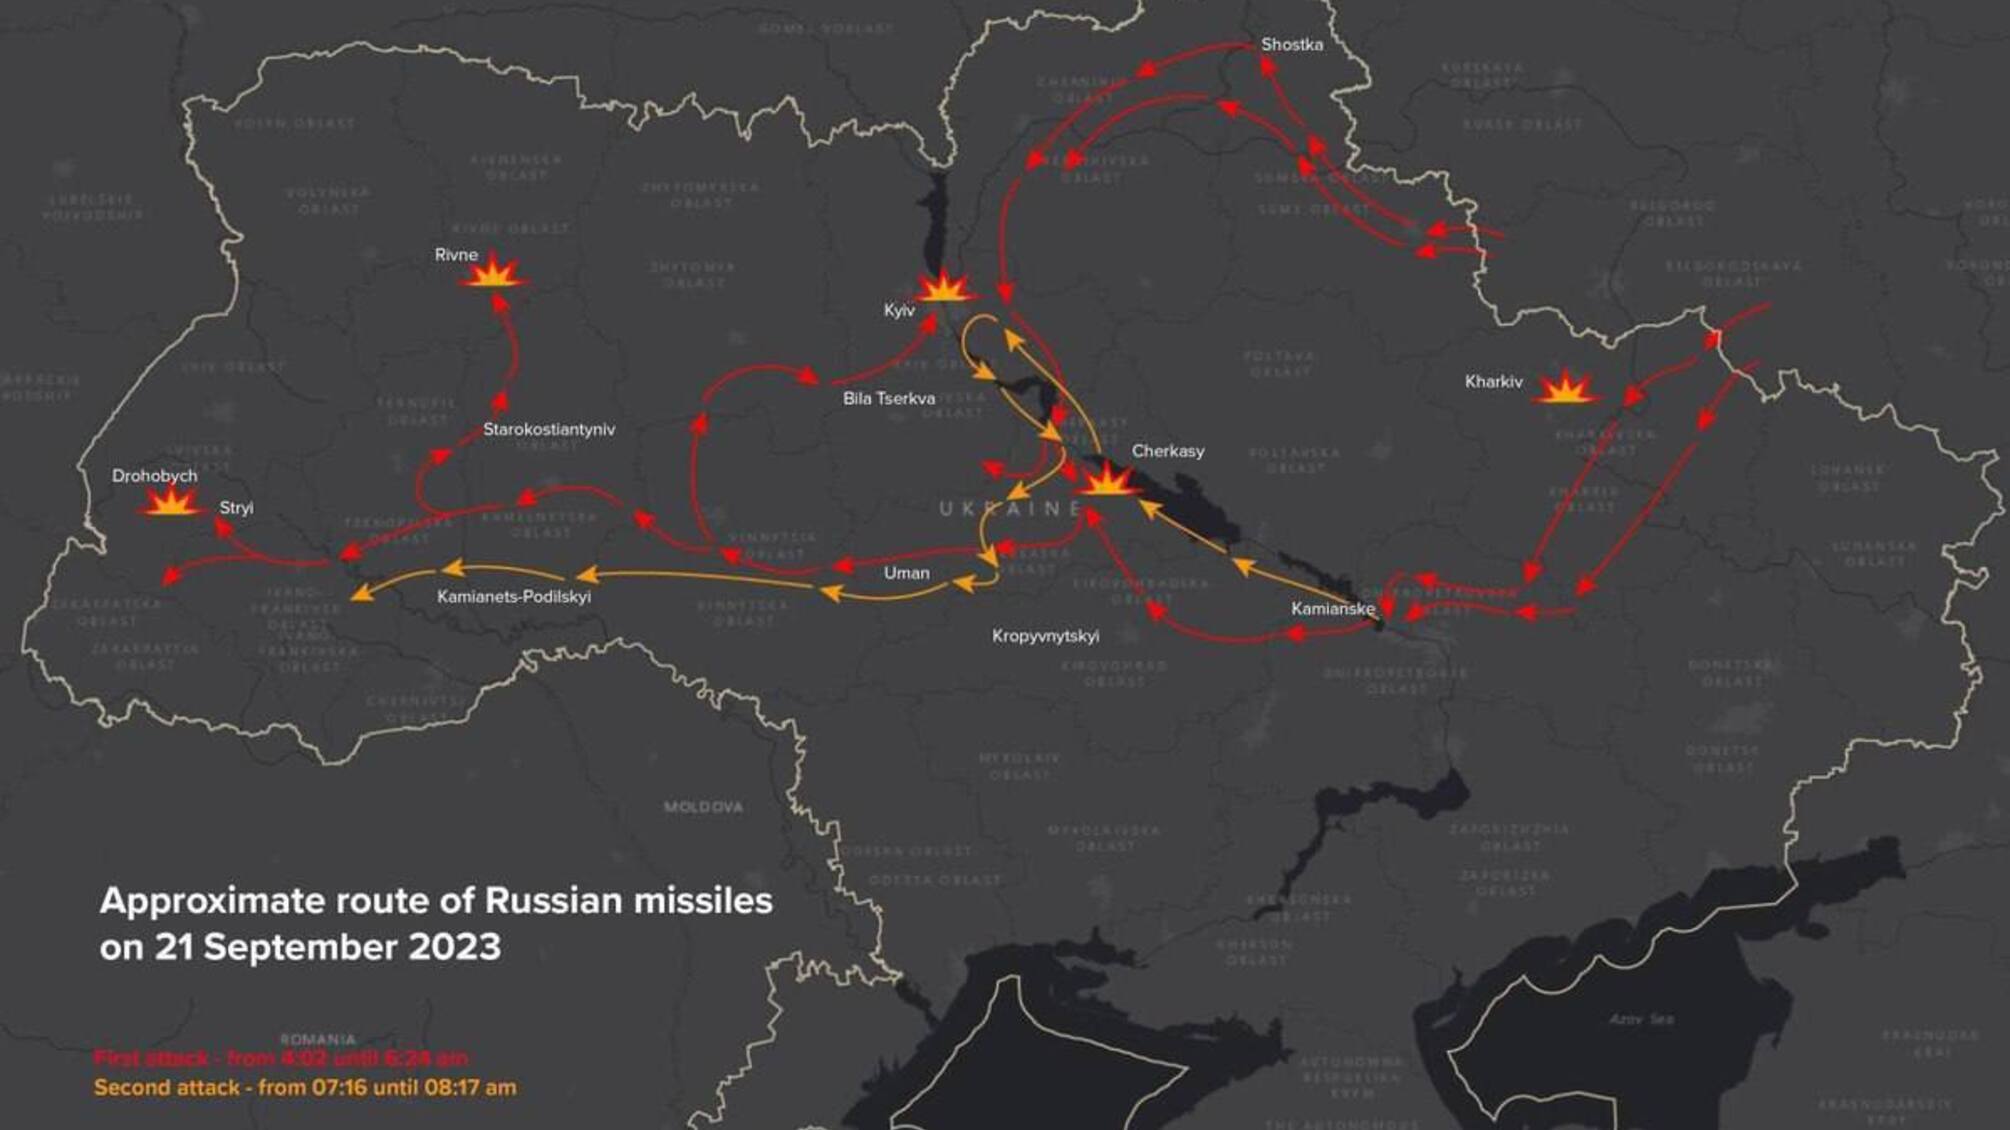 Военные аналитики визуализировали маршруты крылатых ракет России во время массированной атаки 21 сентября